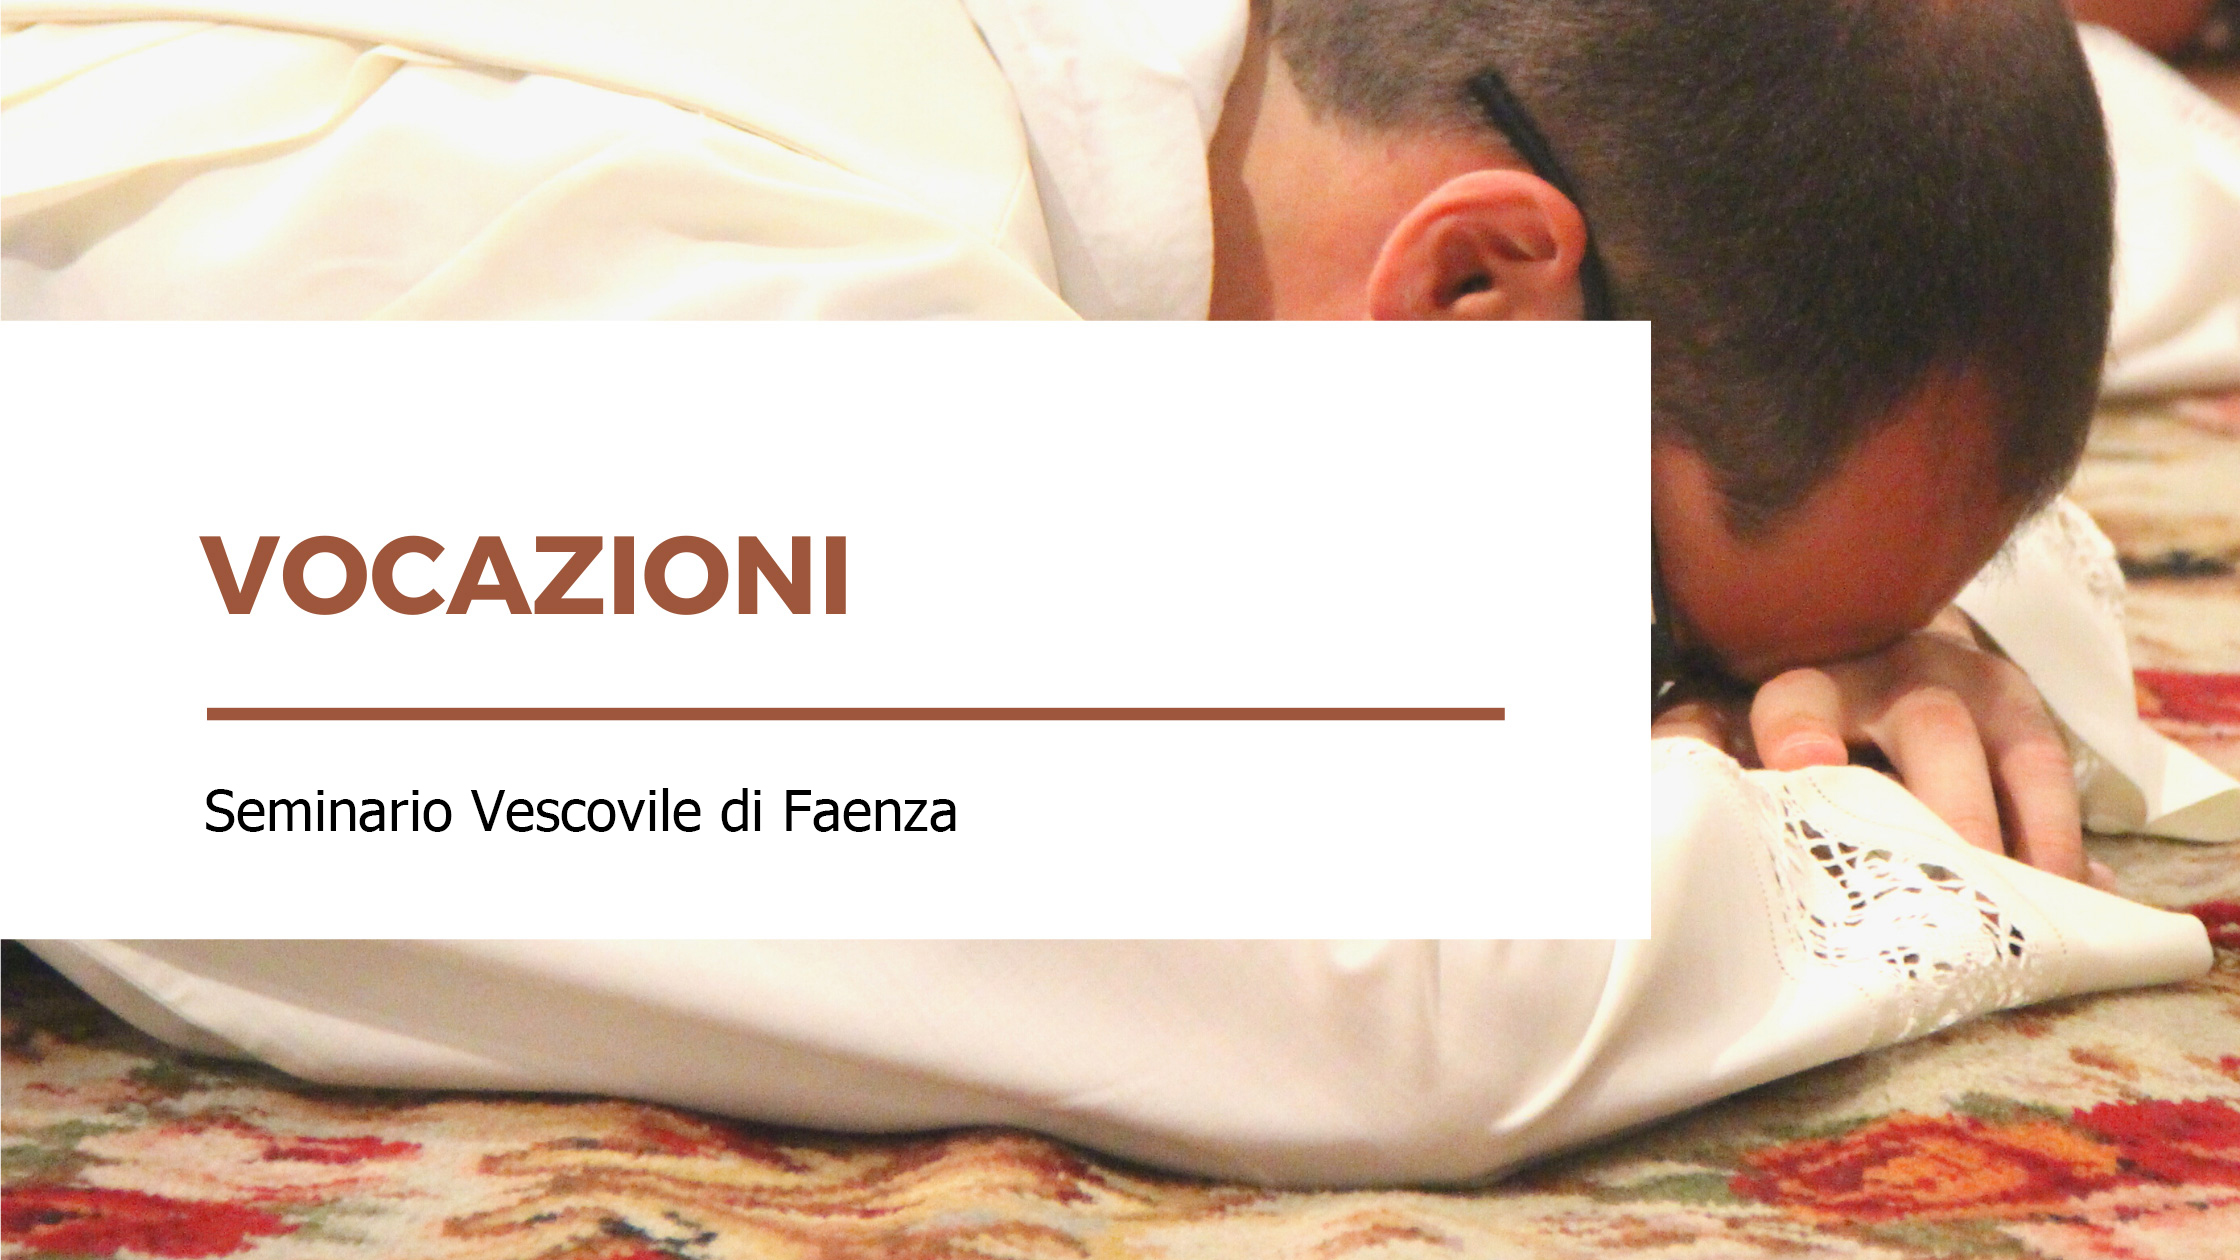 Vocazioni - Seminario Vescovile di Faenza